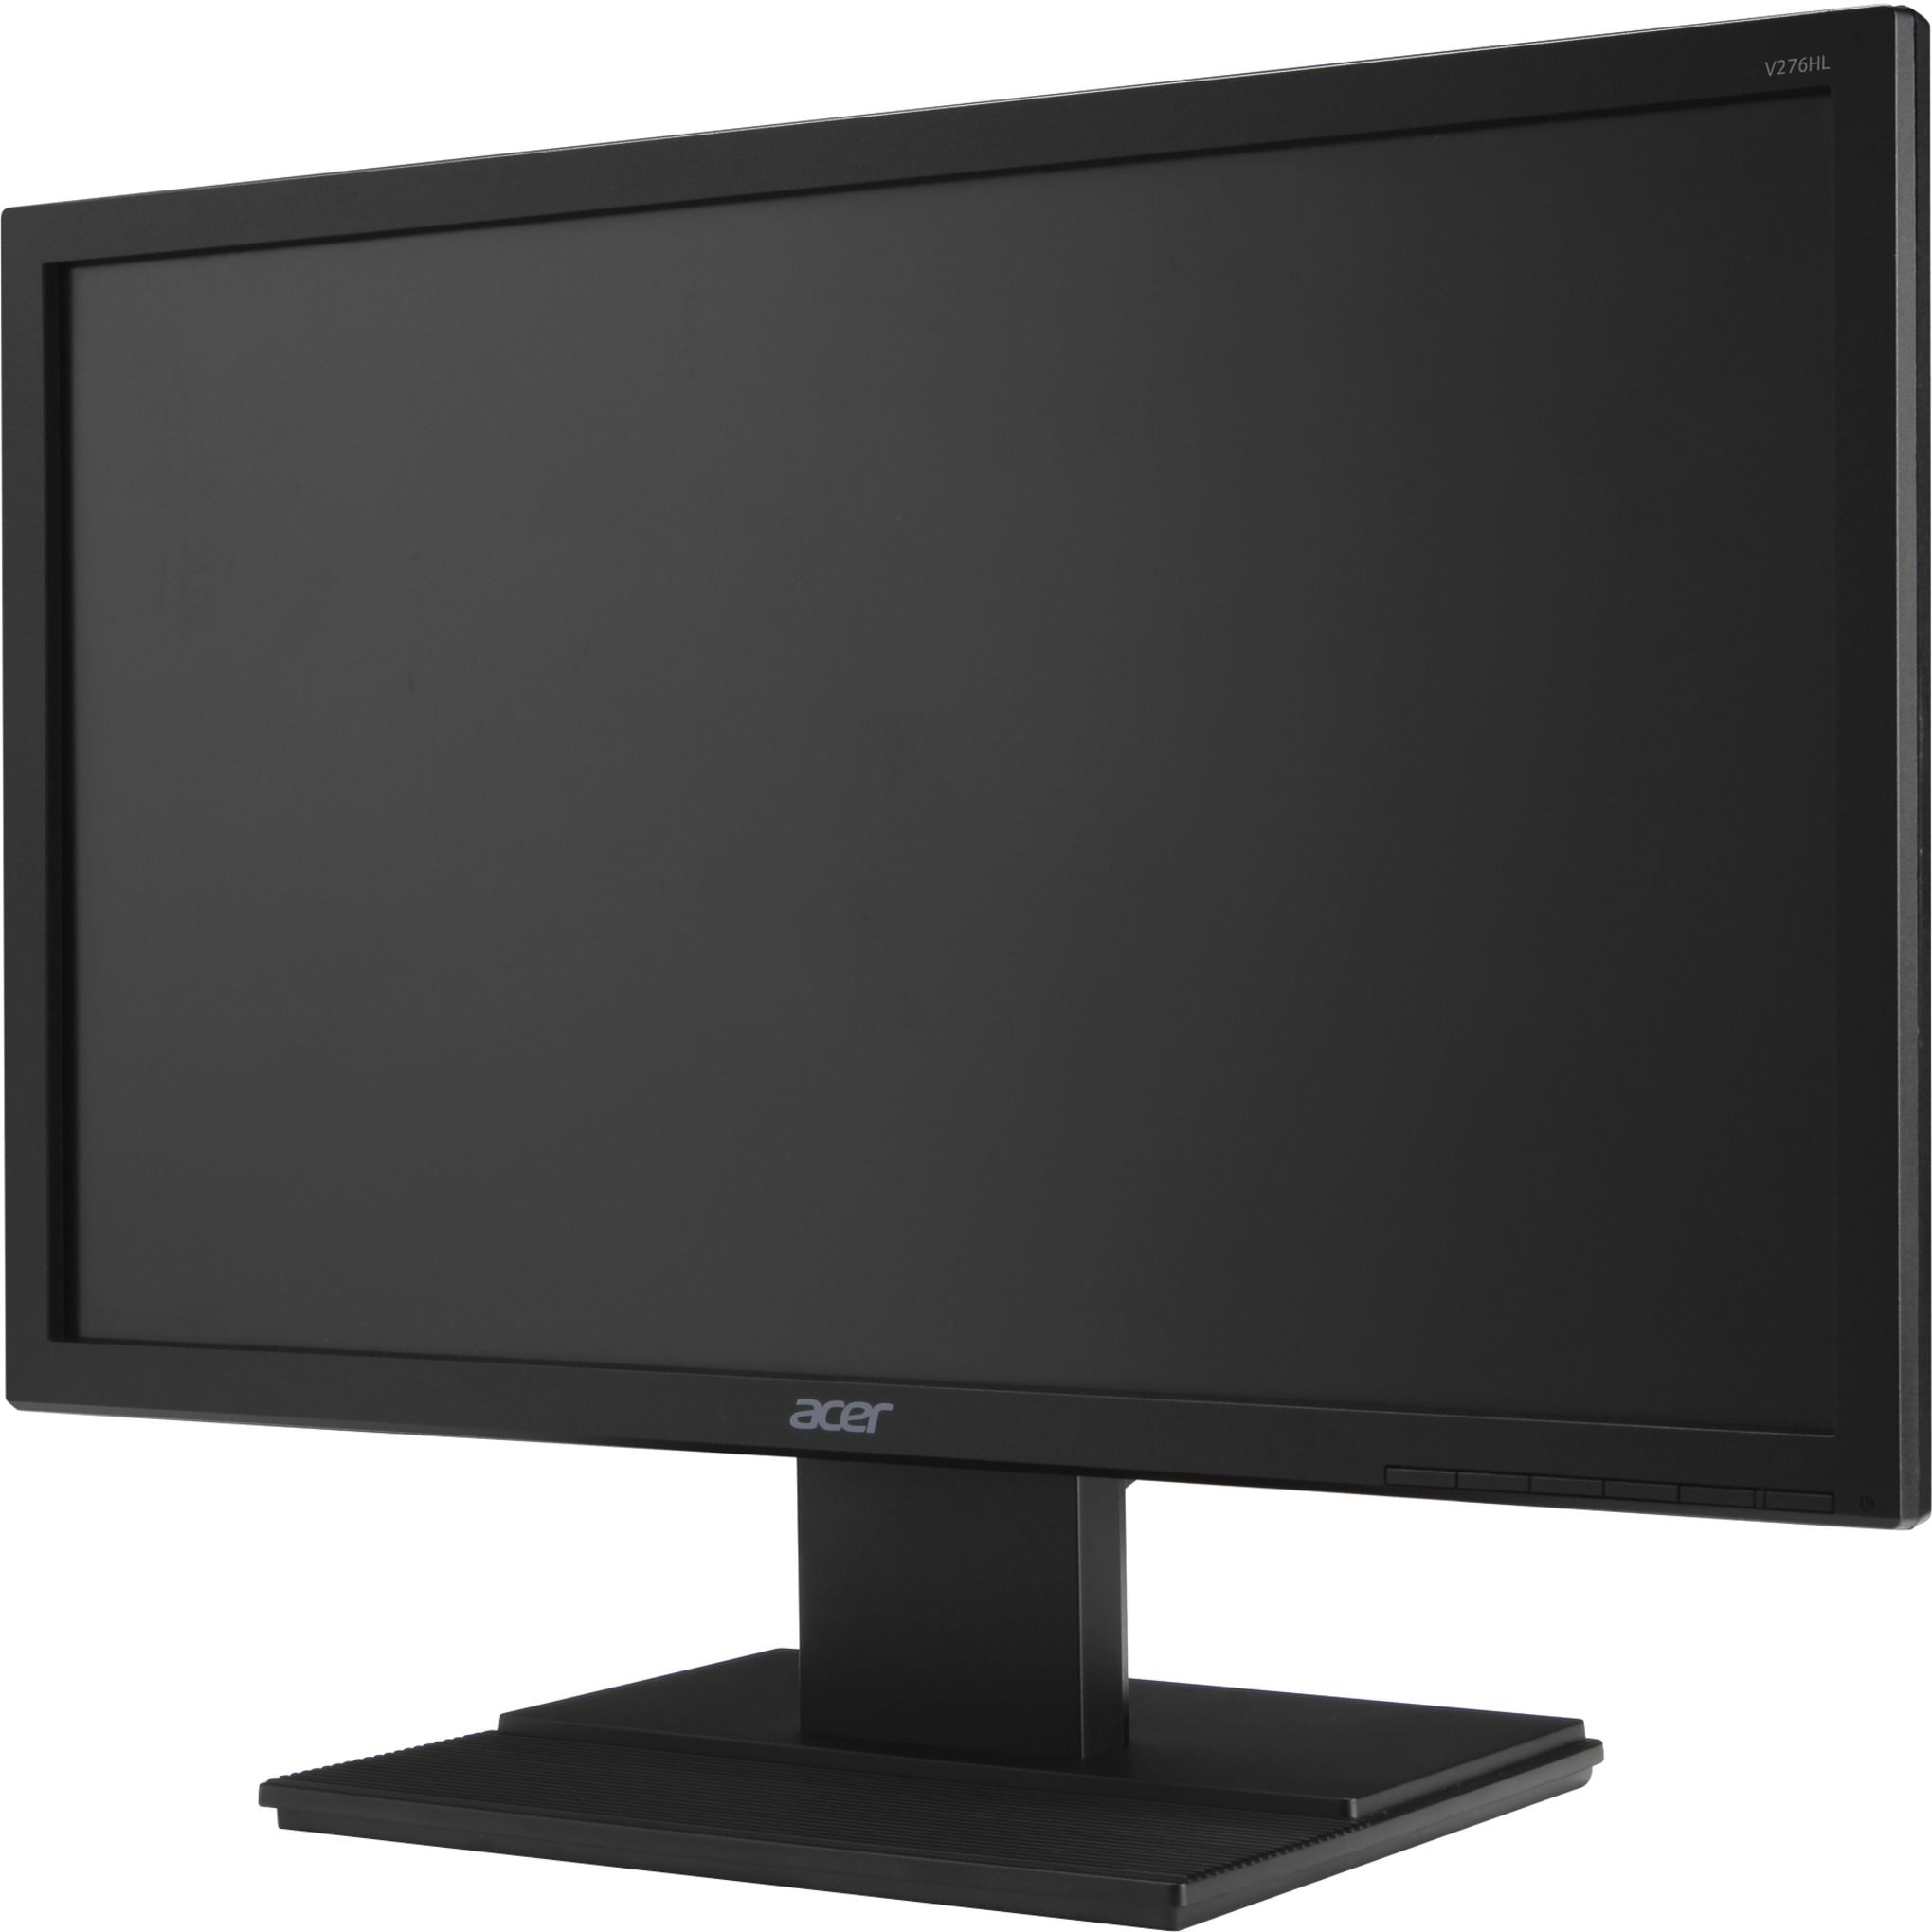 Acer V276HL 27" Class Full HD LCD Monitor, 16:9, Black - image 3 of 5